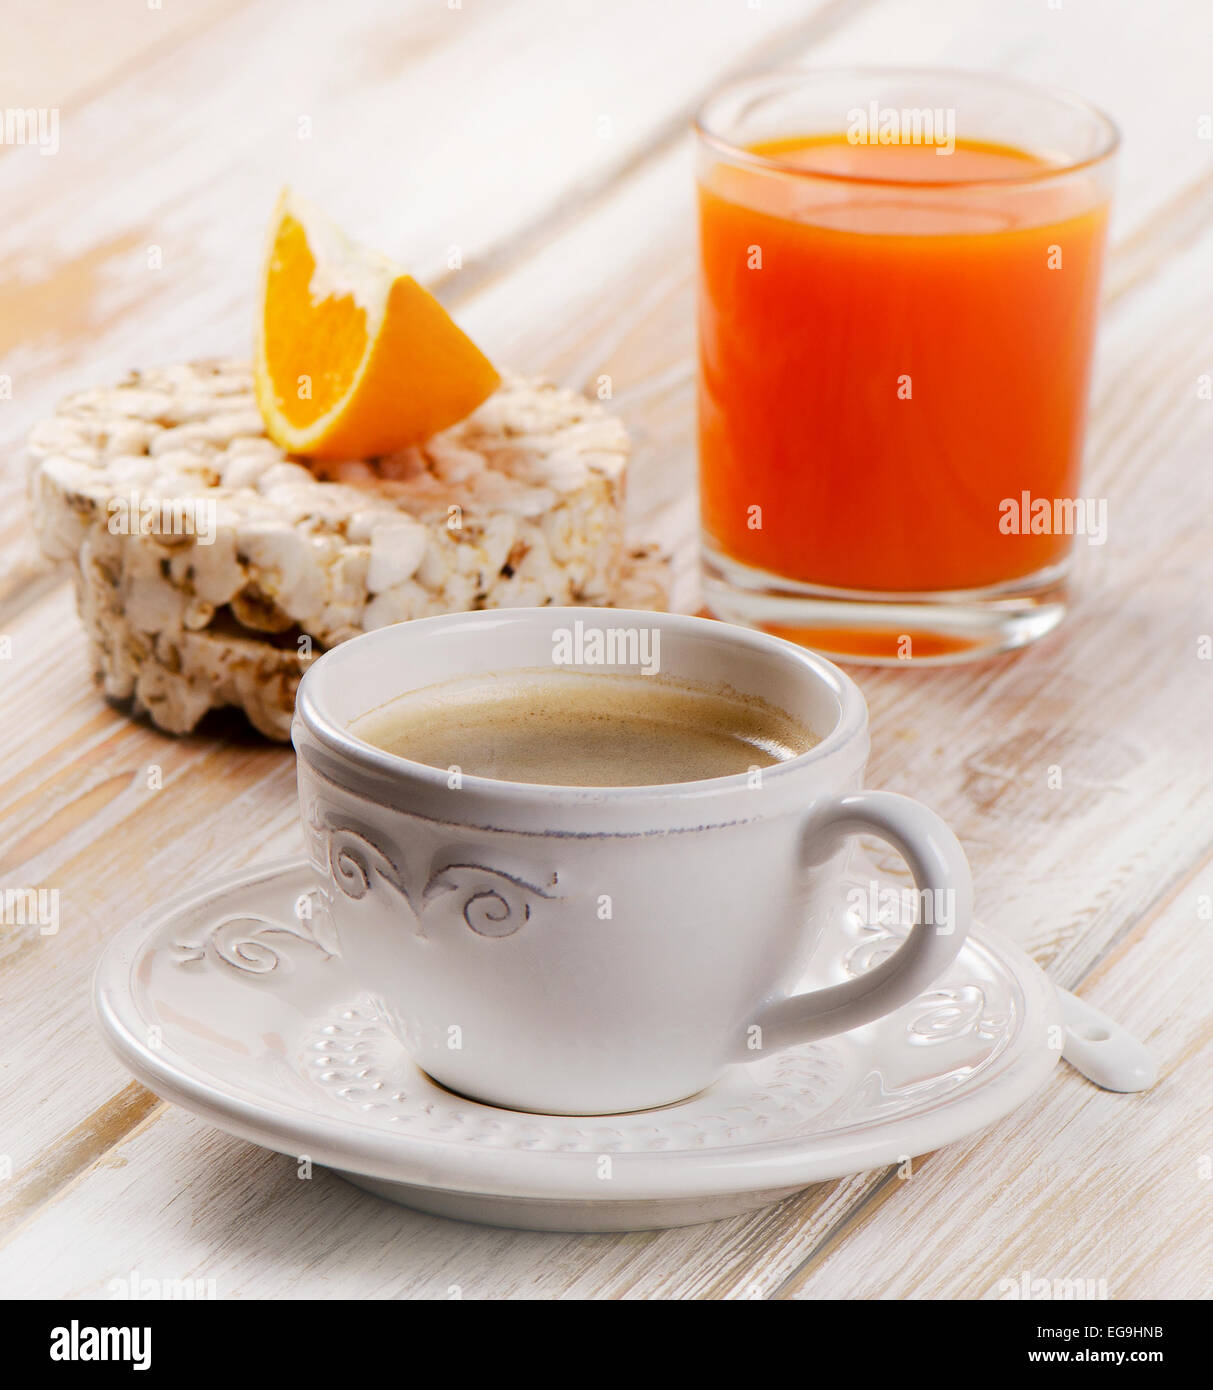 Una sana prima colazione - tazza da caffè, succo d'arancia e pane tostato Foto Stock